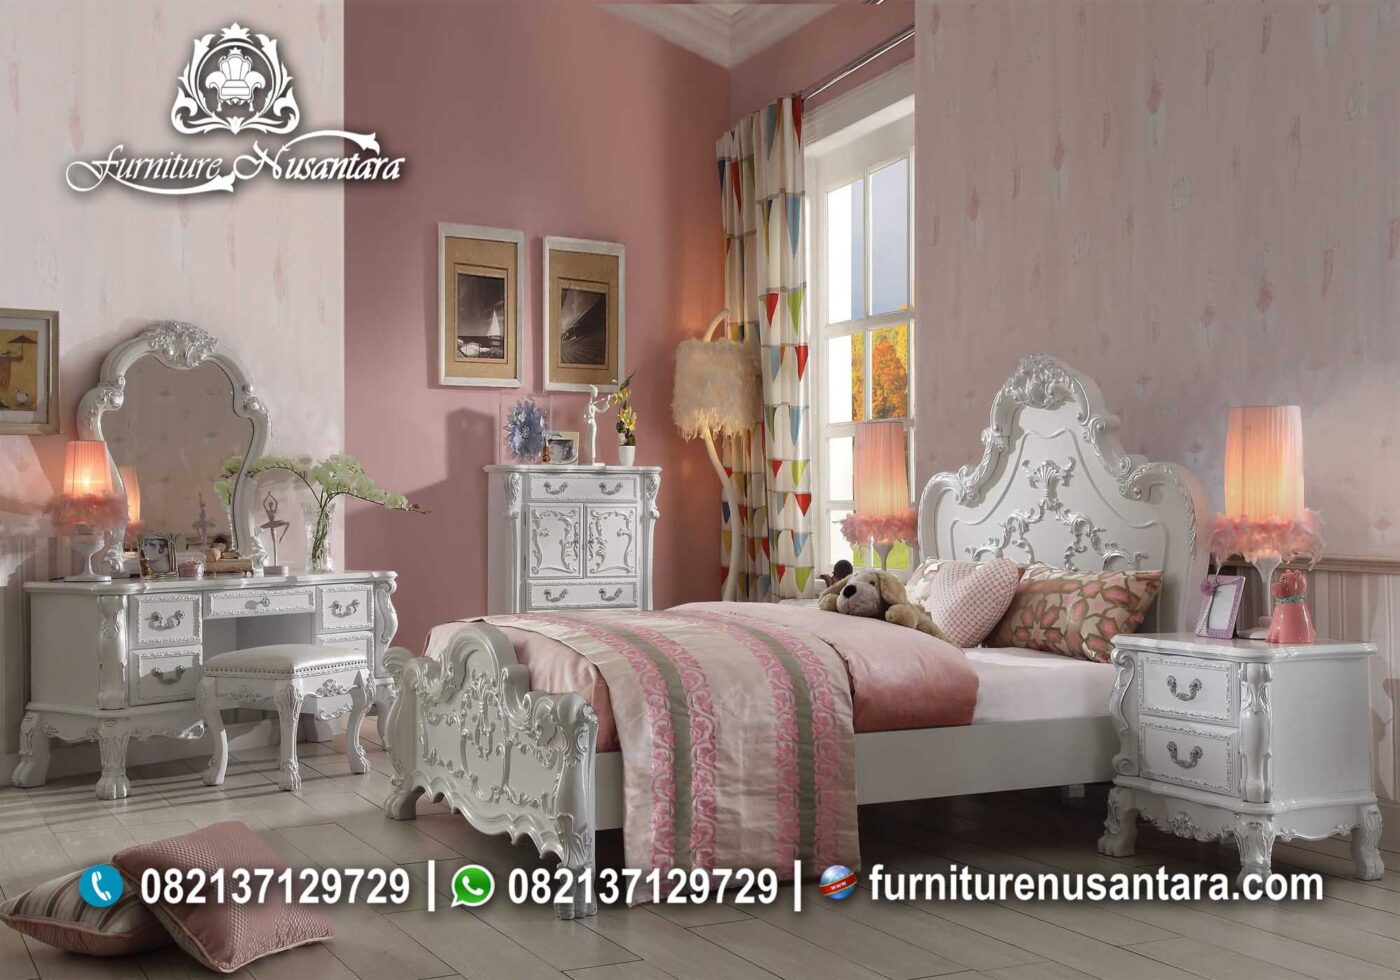 Desain Kamar Tidur Terbaru KS-23, Furniture Nusantara